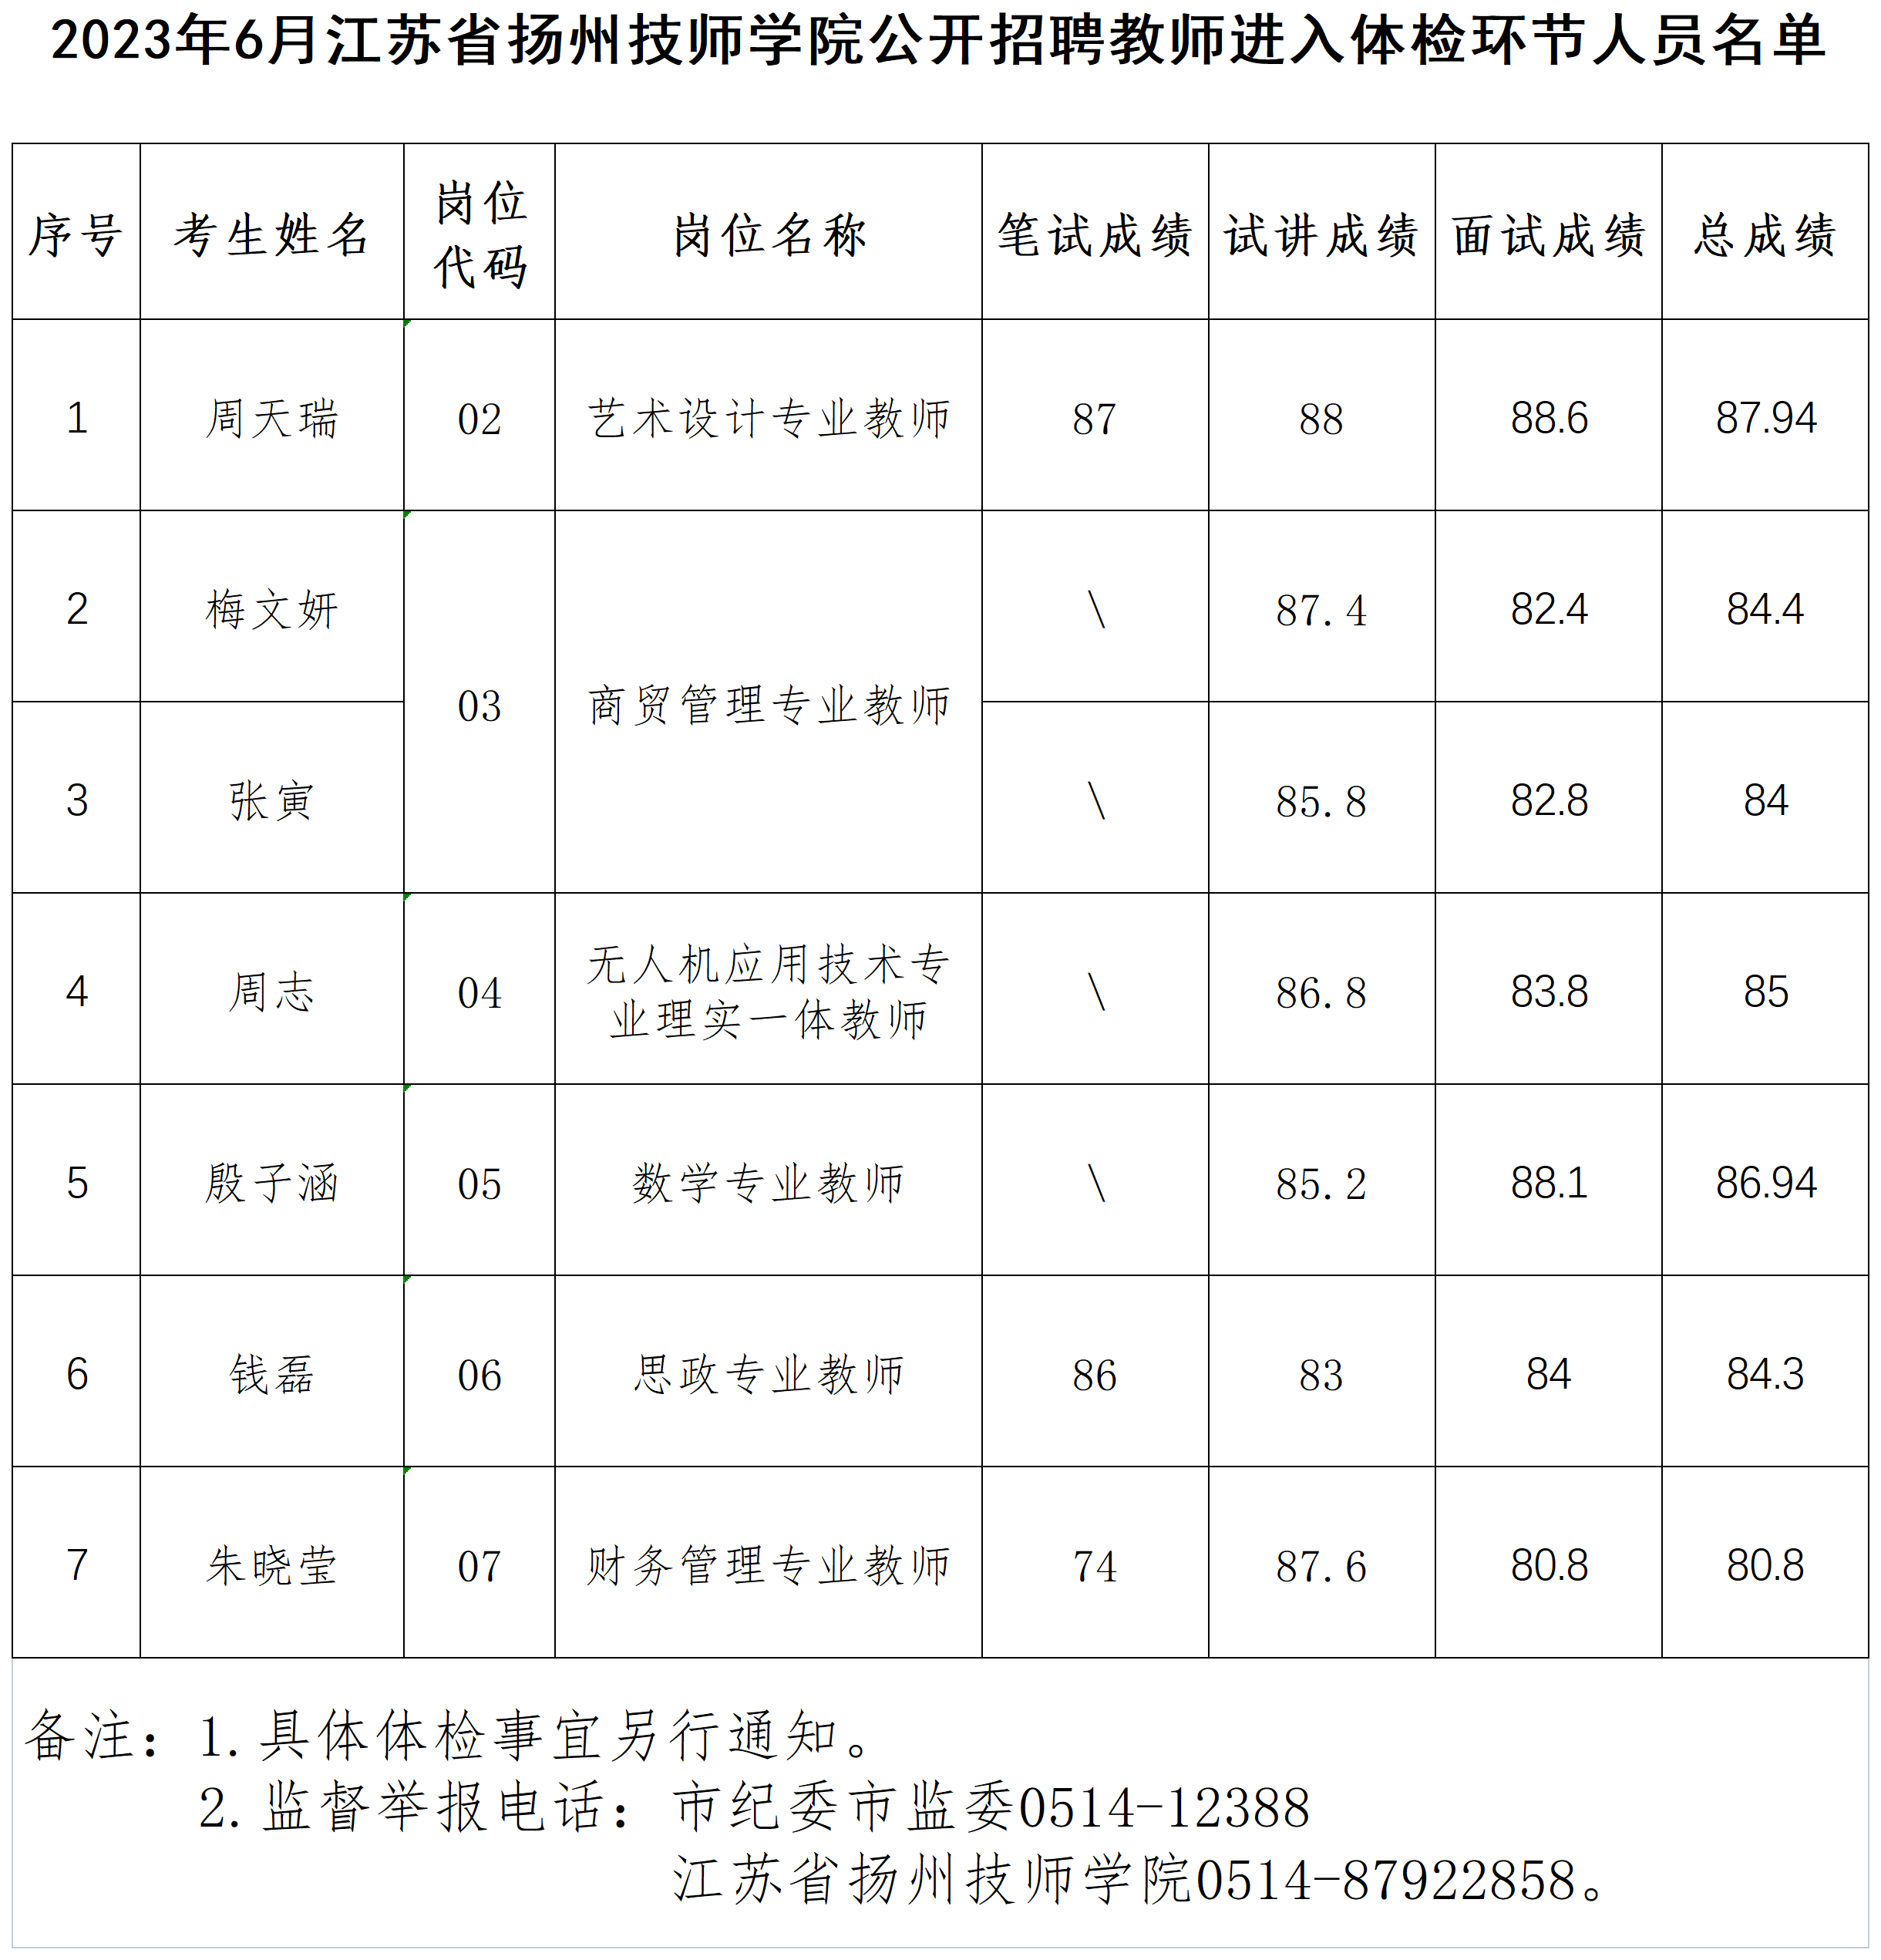 2023年6月江苏省扬州技师学院公开招聘教师进入体检环节人员名单_Sheet1.png